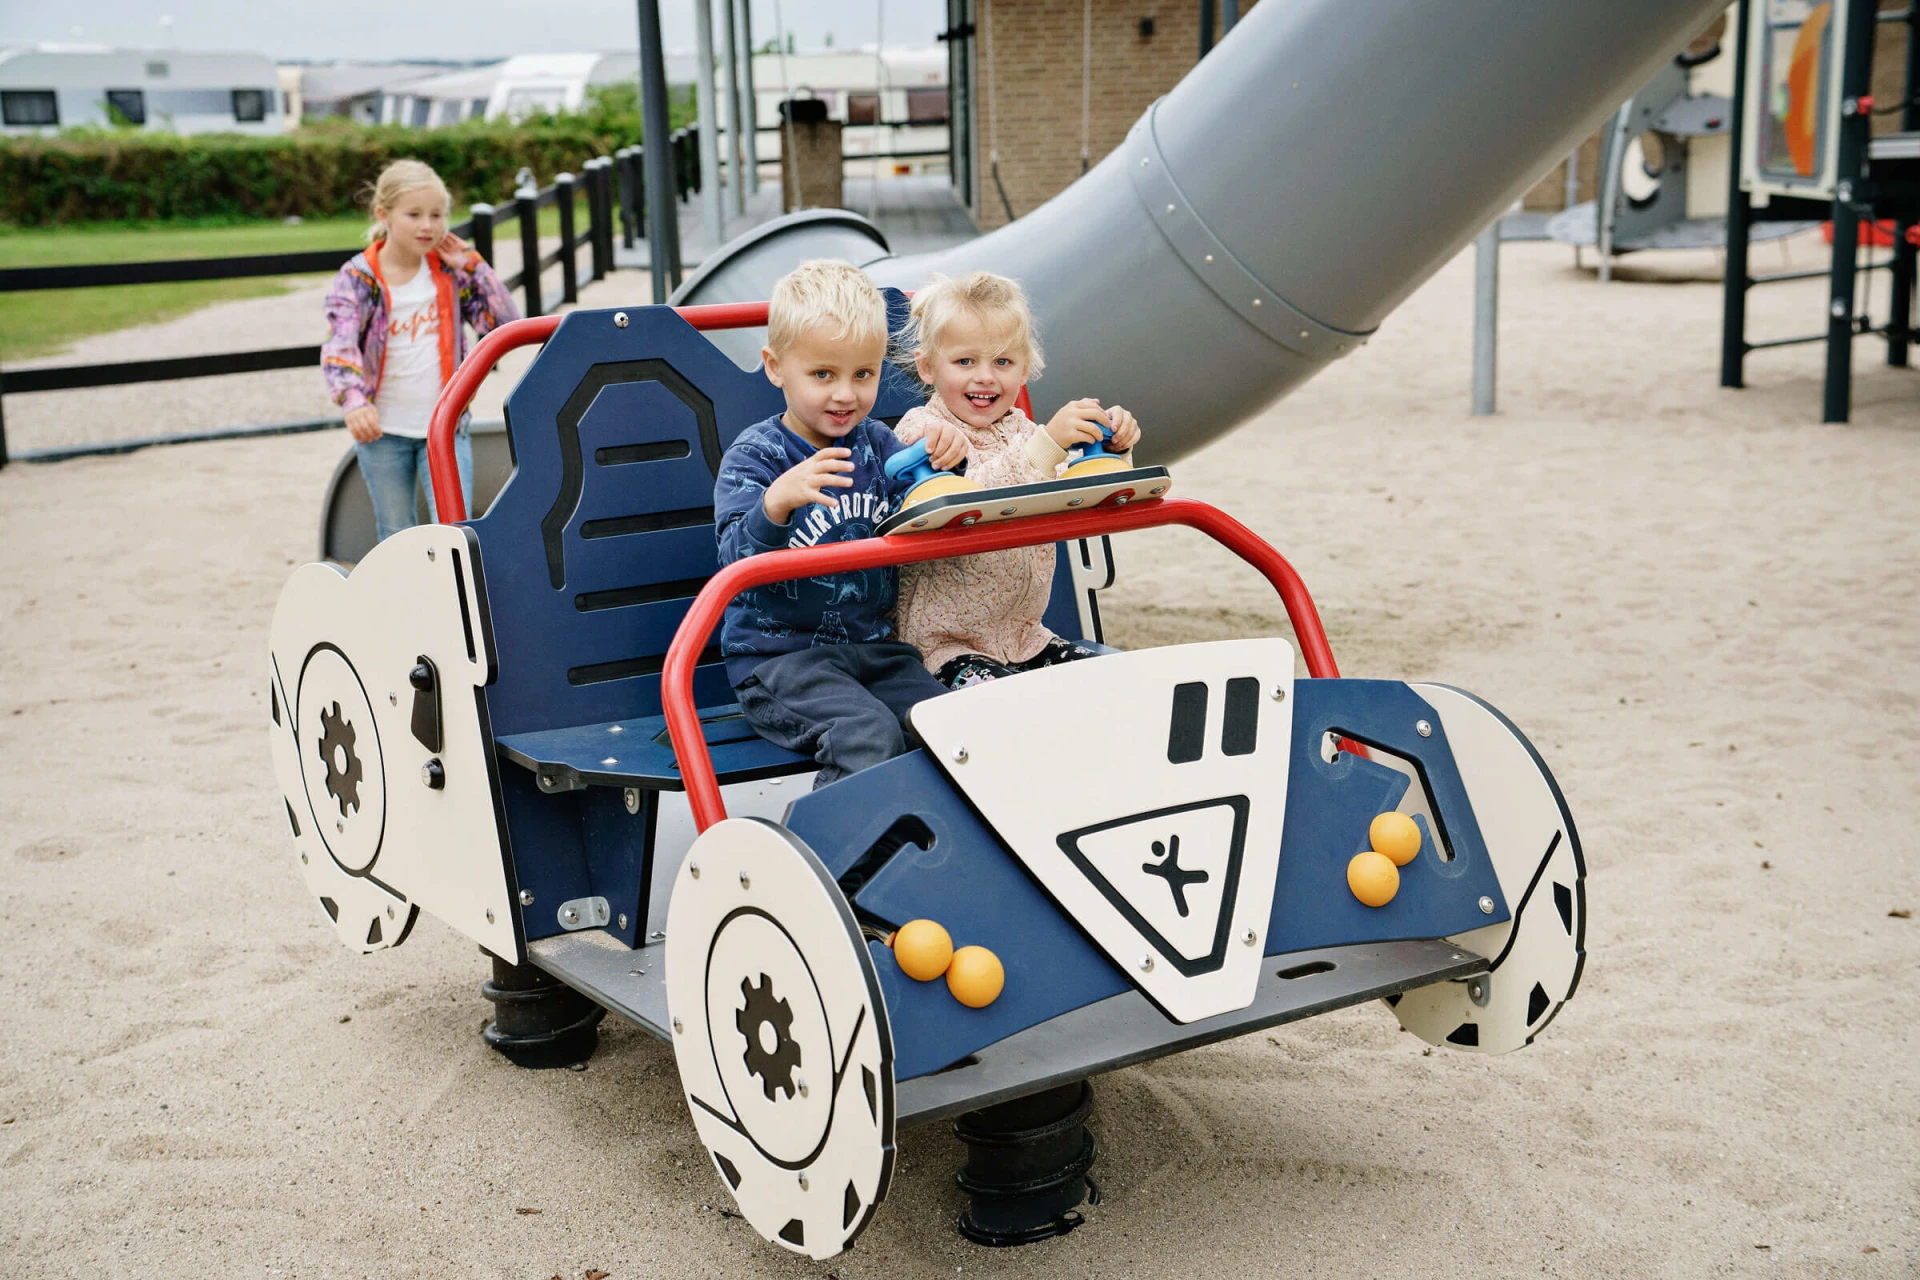 kinderen spelen in een speeltoestel met een autothema